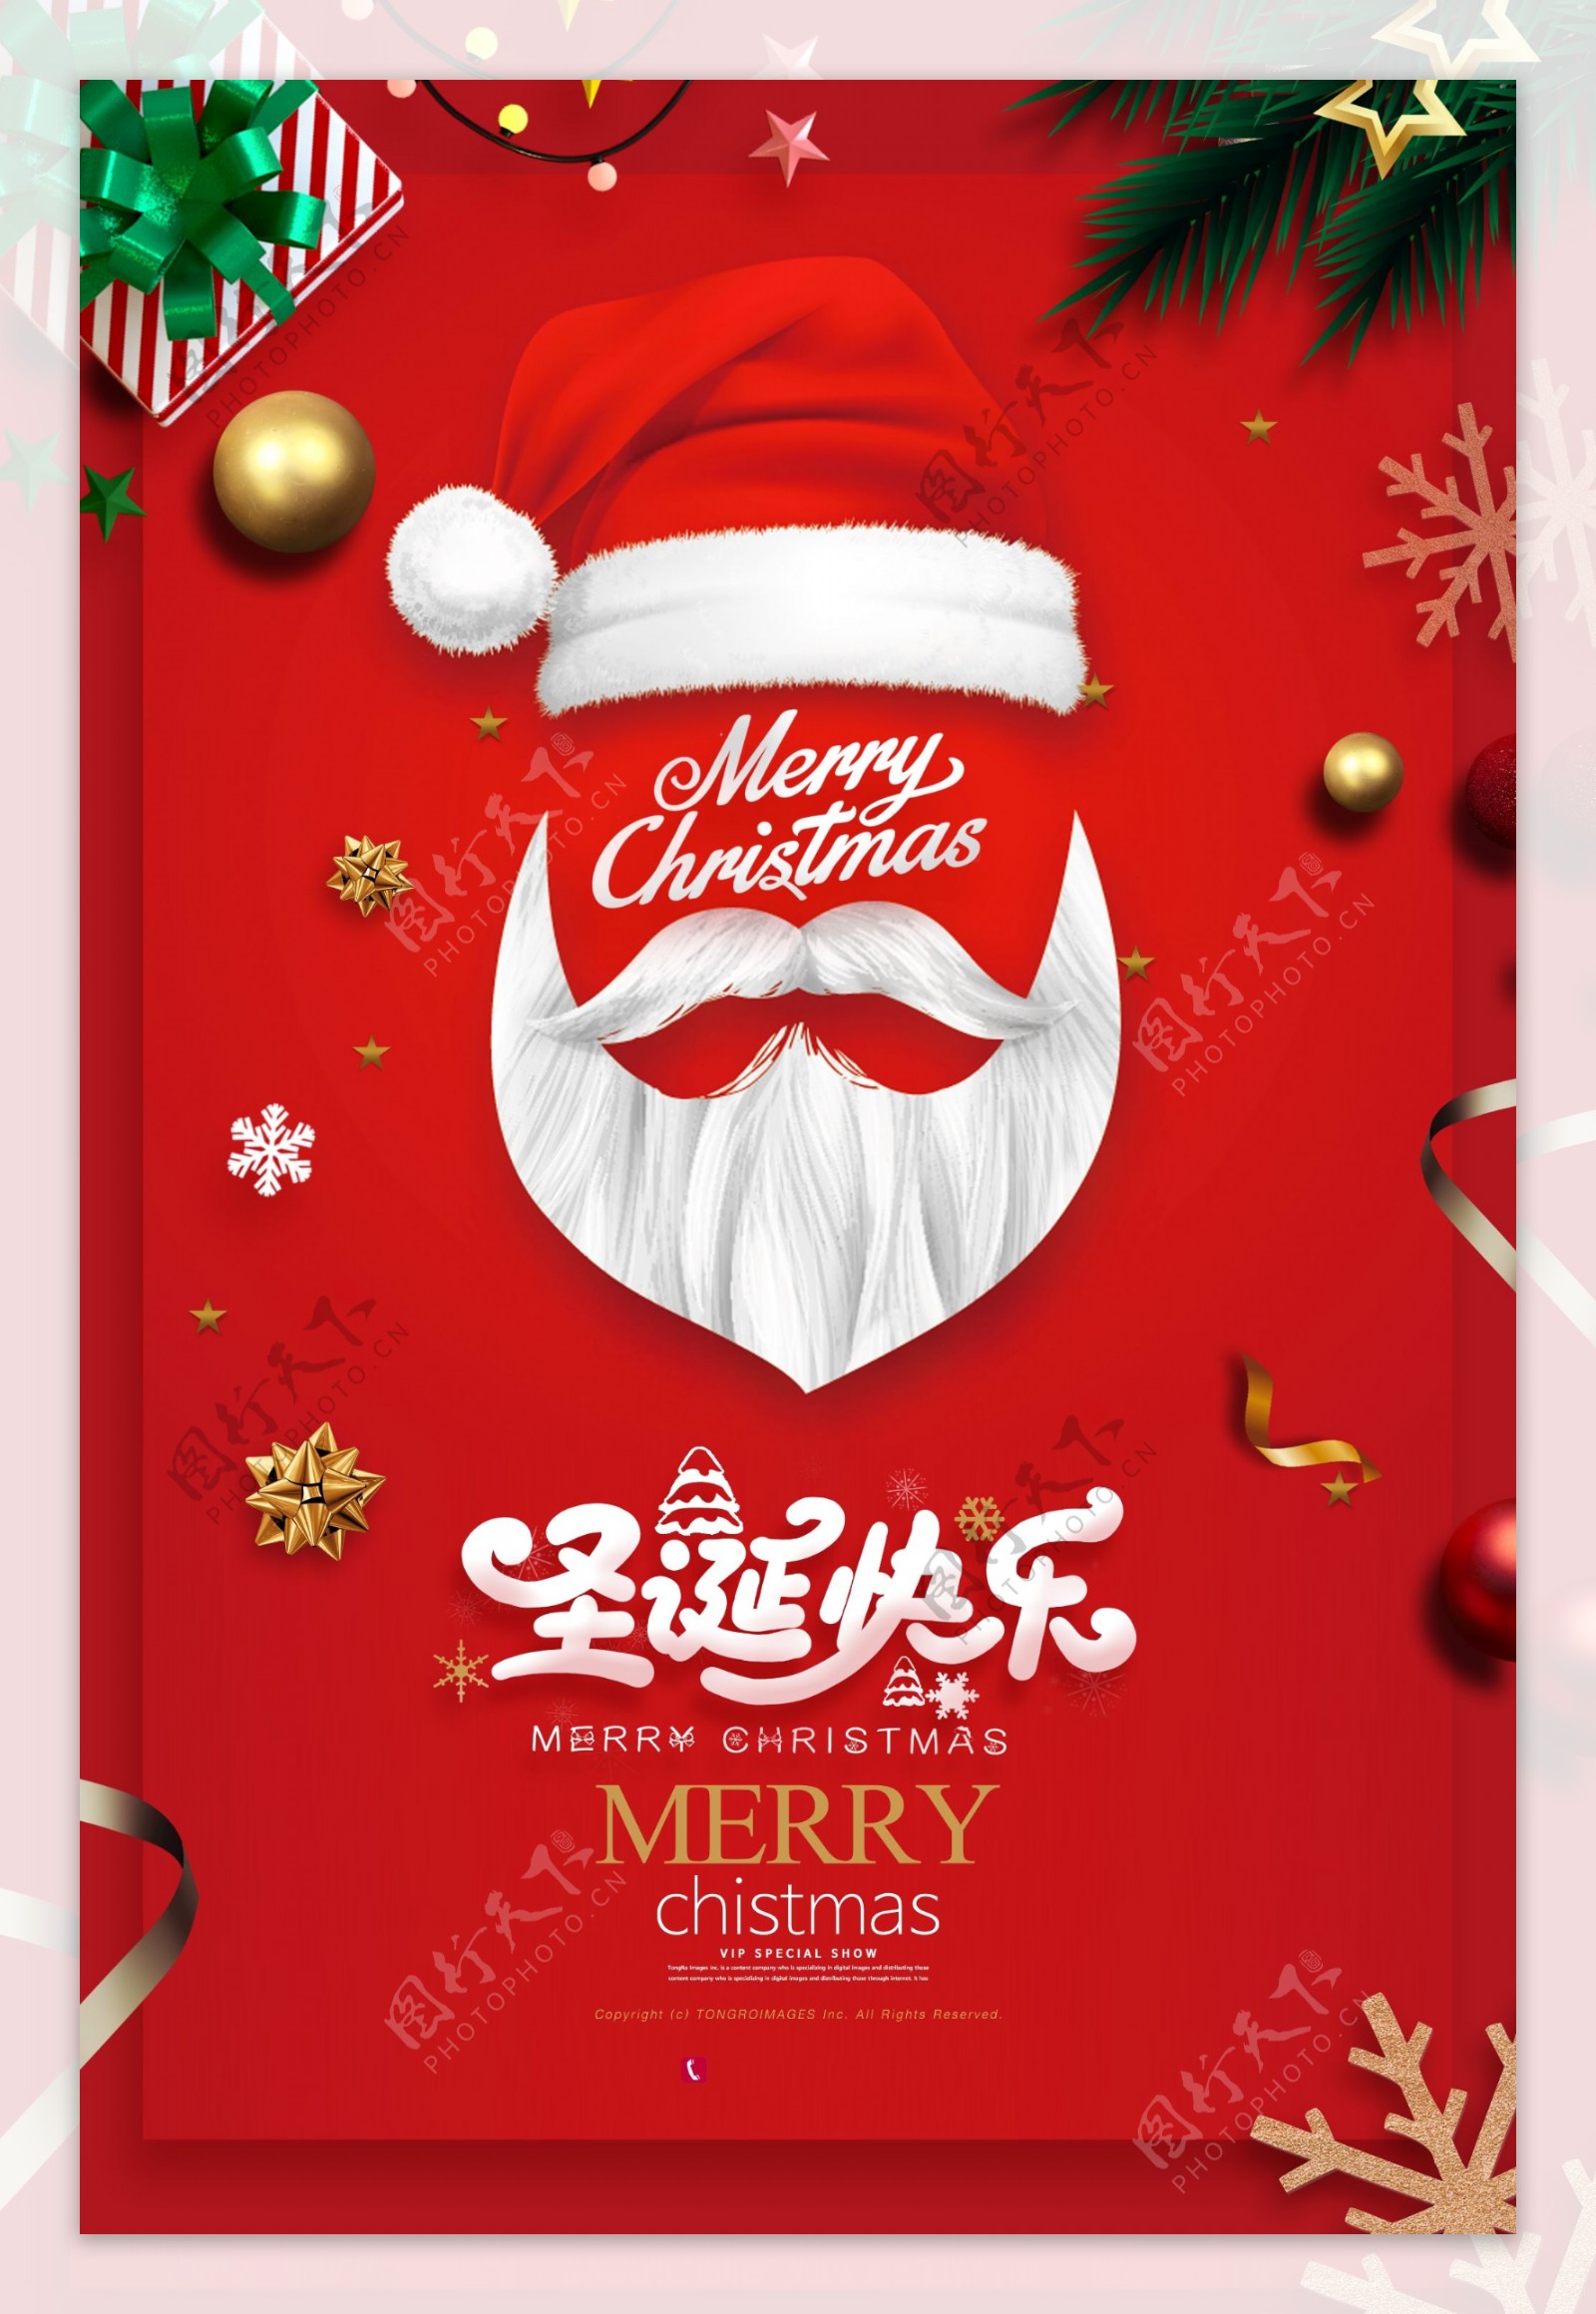 红色简洁圣诞快乐圣诞节海报设计图片